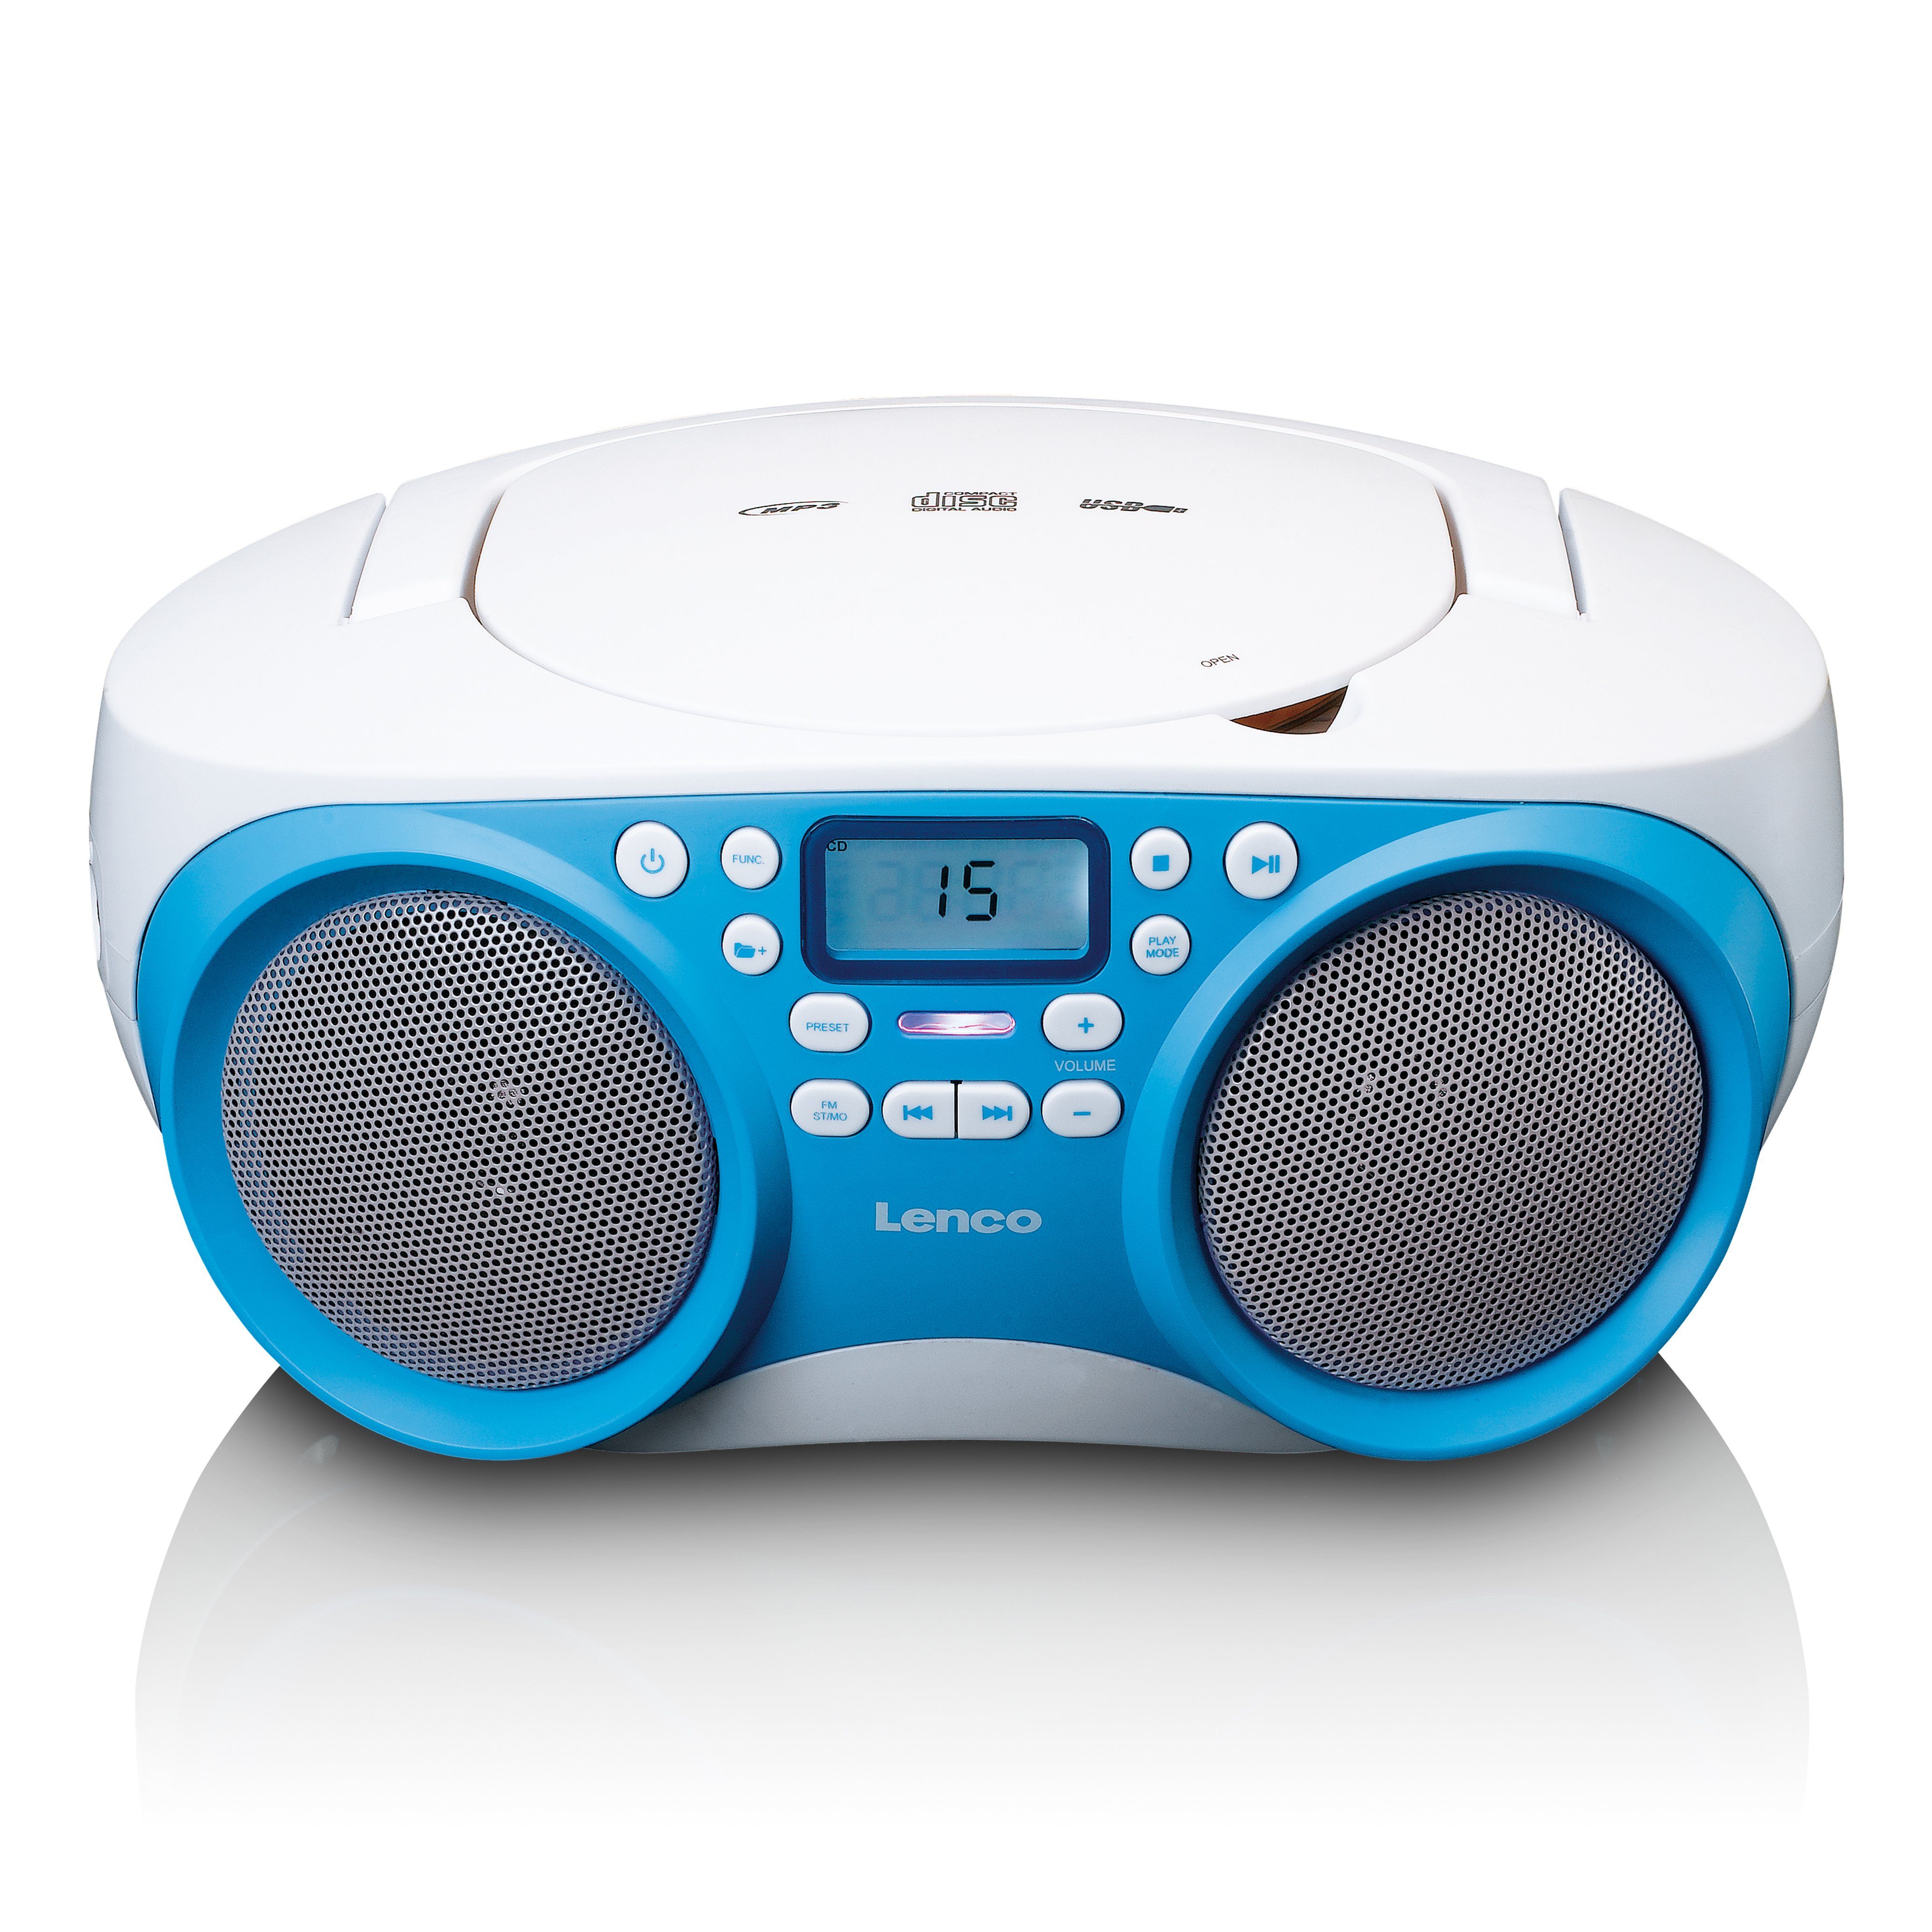 Lenco SCD-301BU CD-Radiorecorder (FM) Weiß-Blau